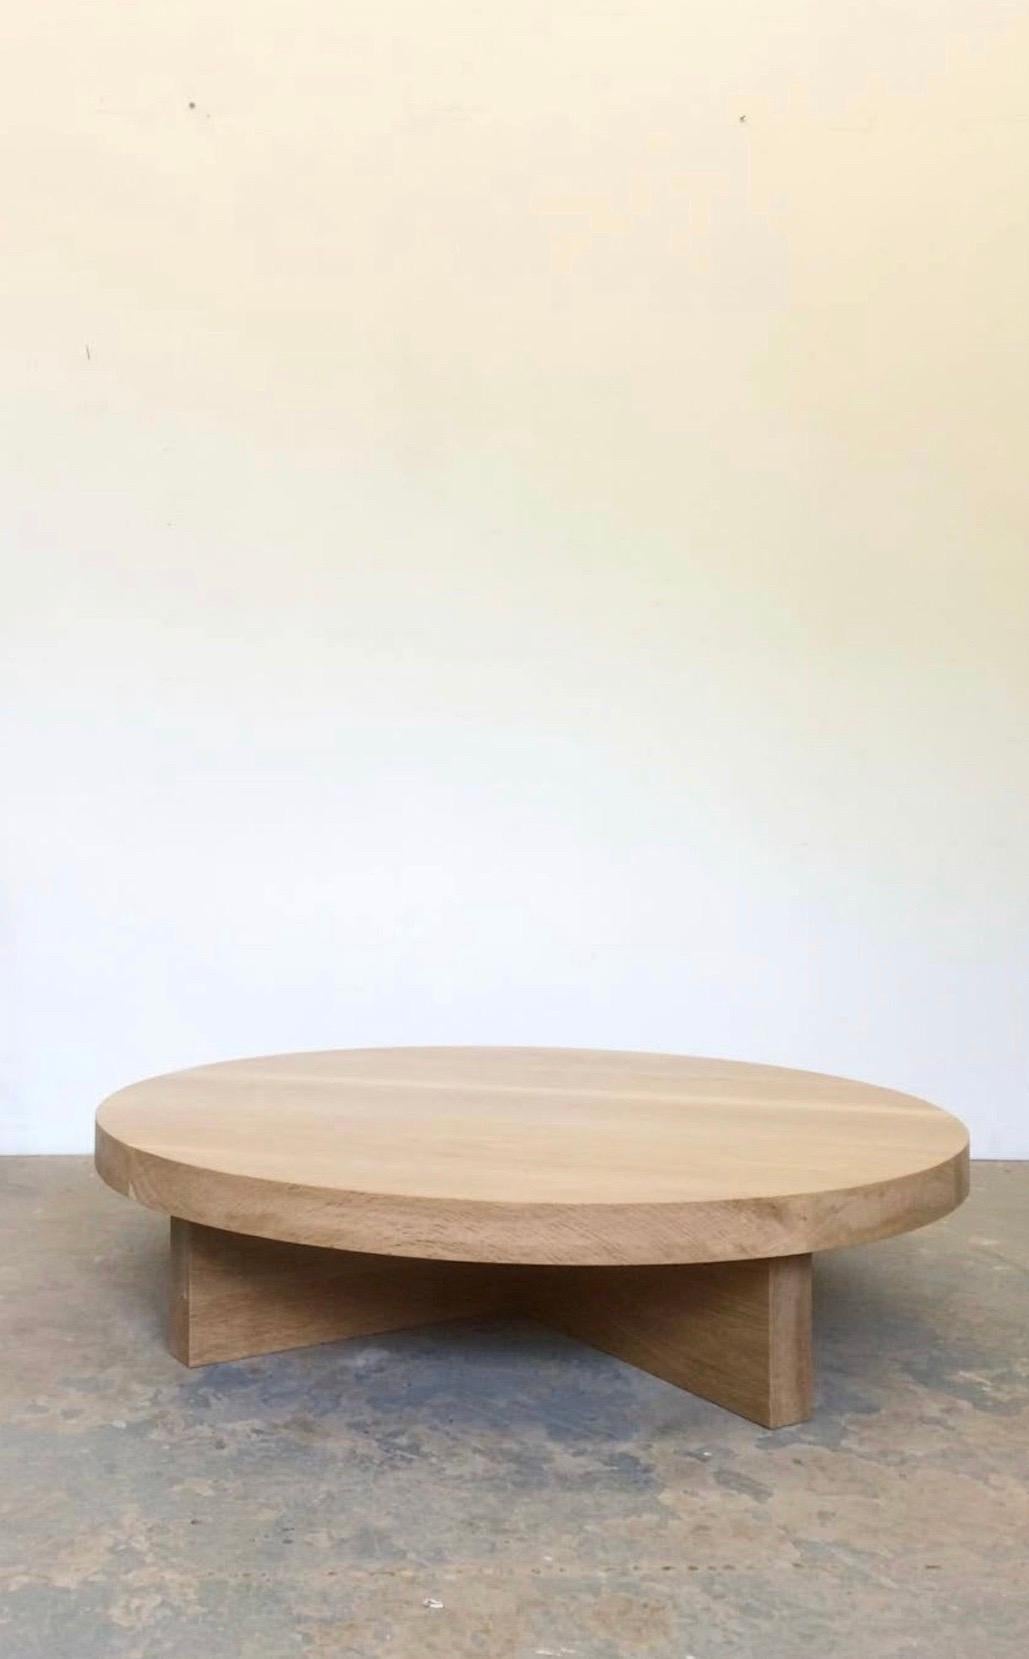 Dieser Couchtisch aus Massivholz wird in Handarbeit aus Holz gefertigt, das seinen natürlichen Charakter beibehält und gelegentlich einen Ast, eine Kerbe oder einen Riss aufweist - kein Tisch gleicht dem anderen.